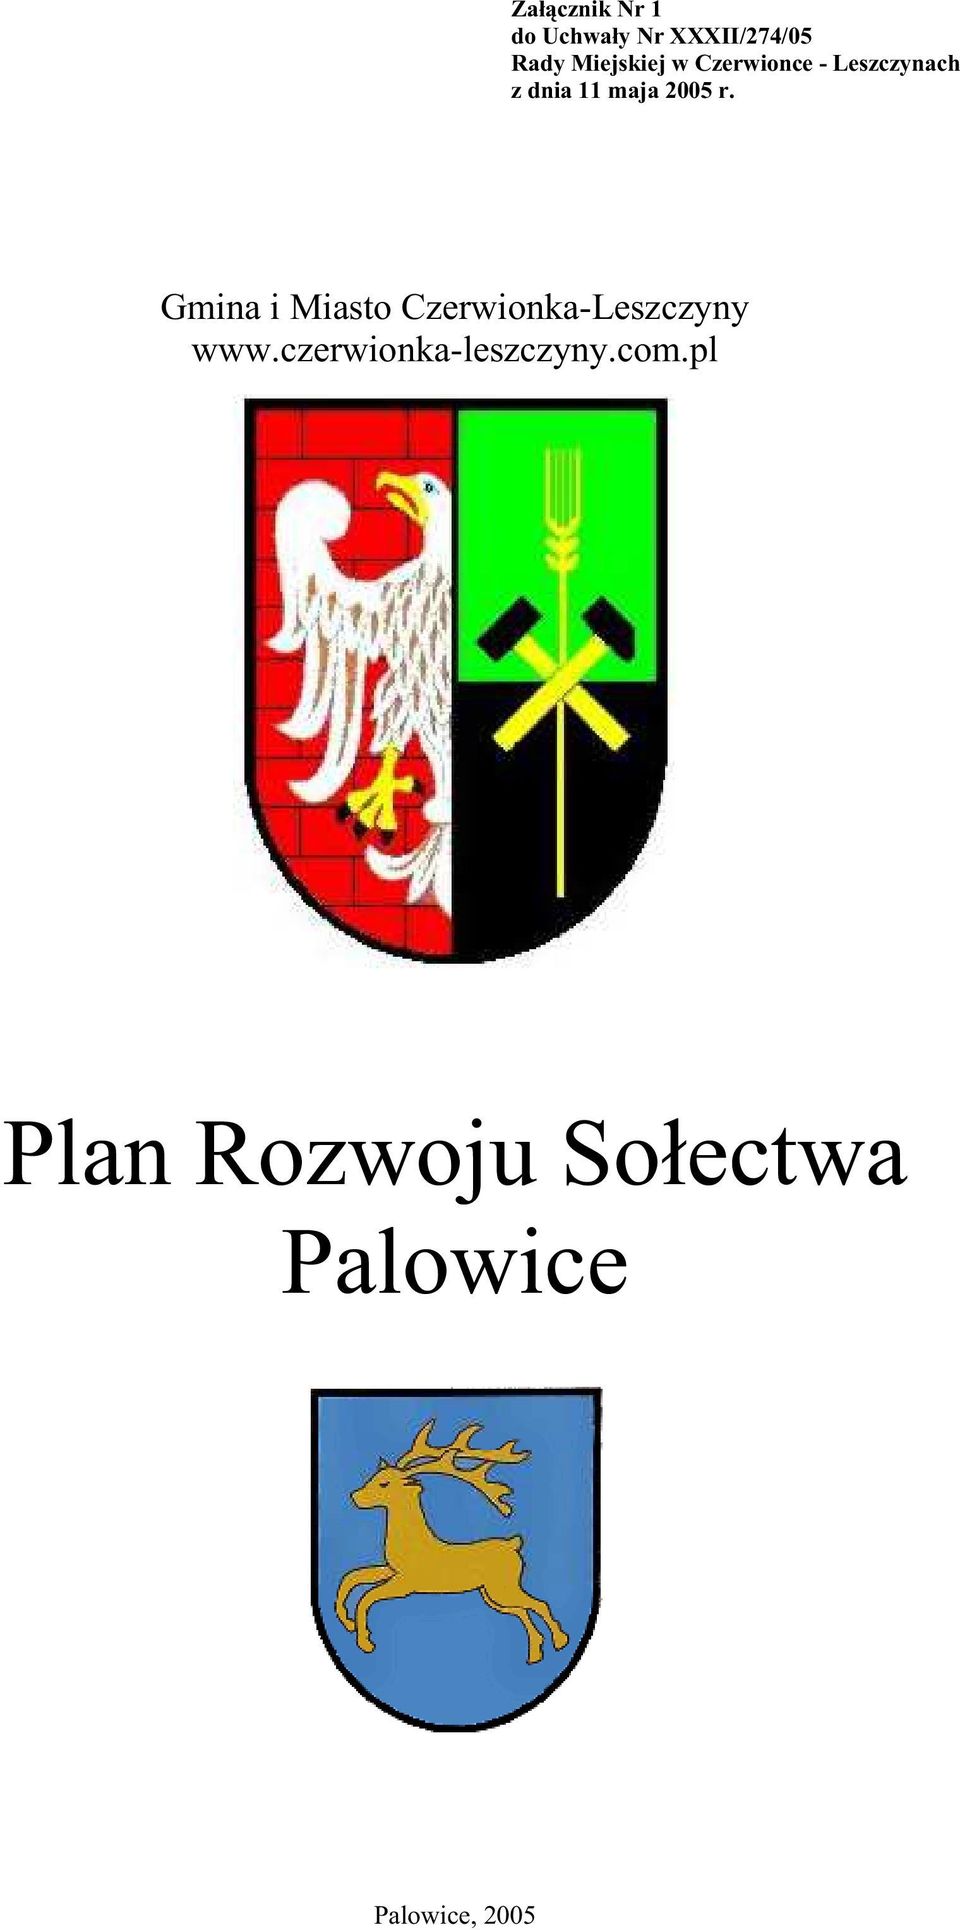 2005 r. Gmina i Miasto Czerwionka-Leszczyny www.